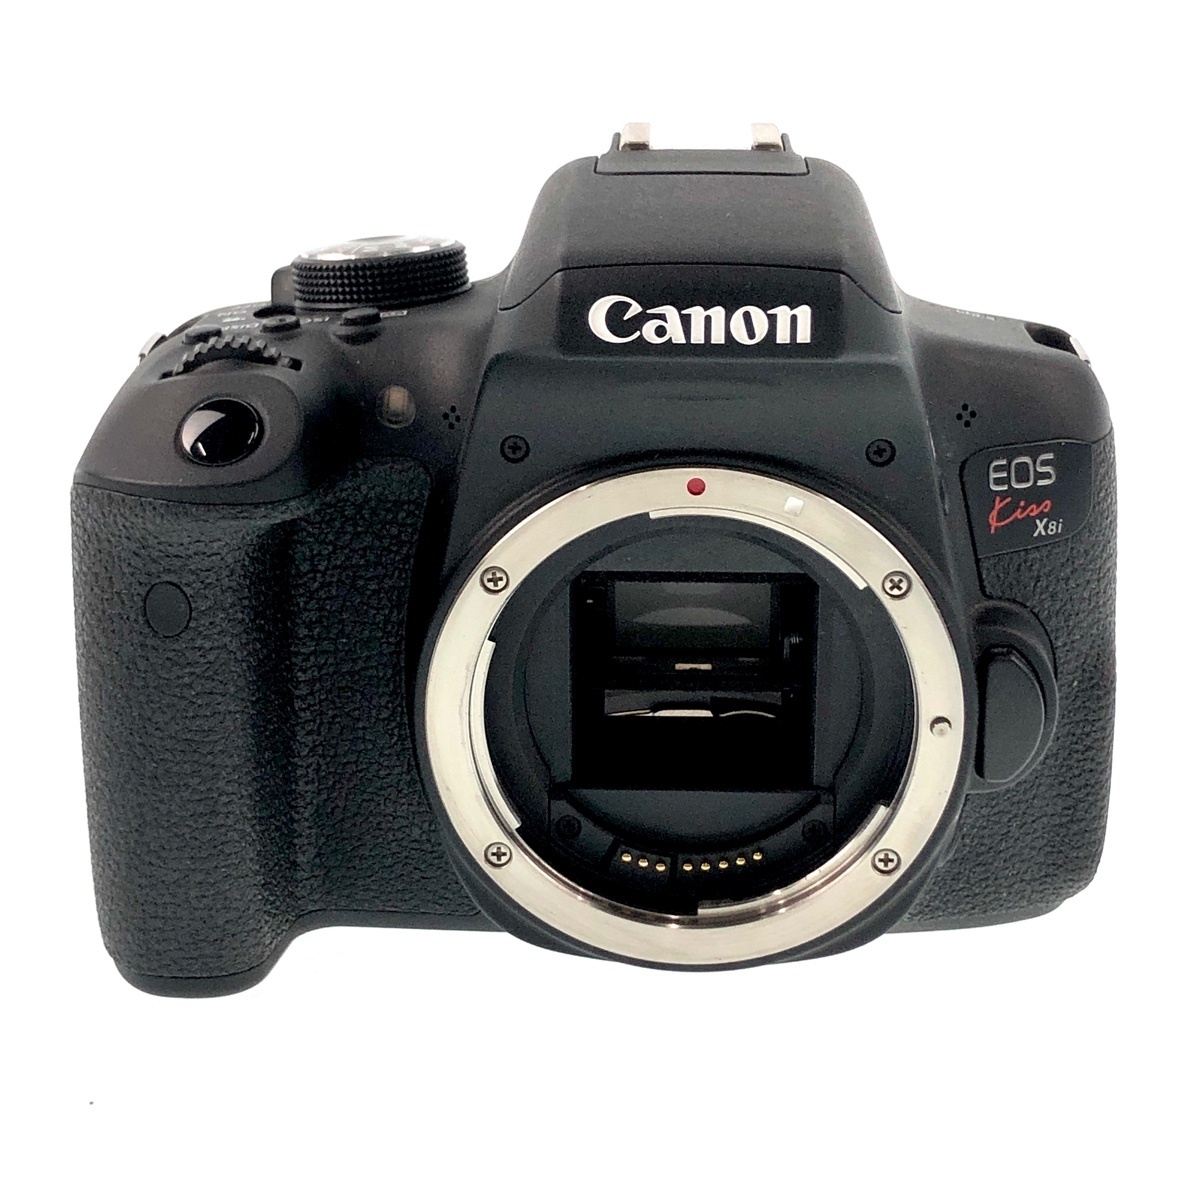 キヤノン Canon EOS Kiss X8i ボディ デジタル 一眼レフカメラ 【】 ic